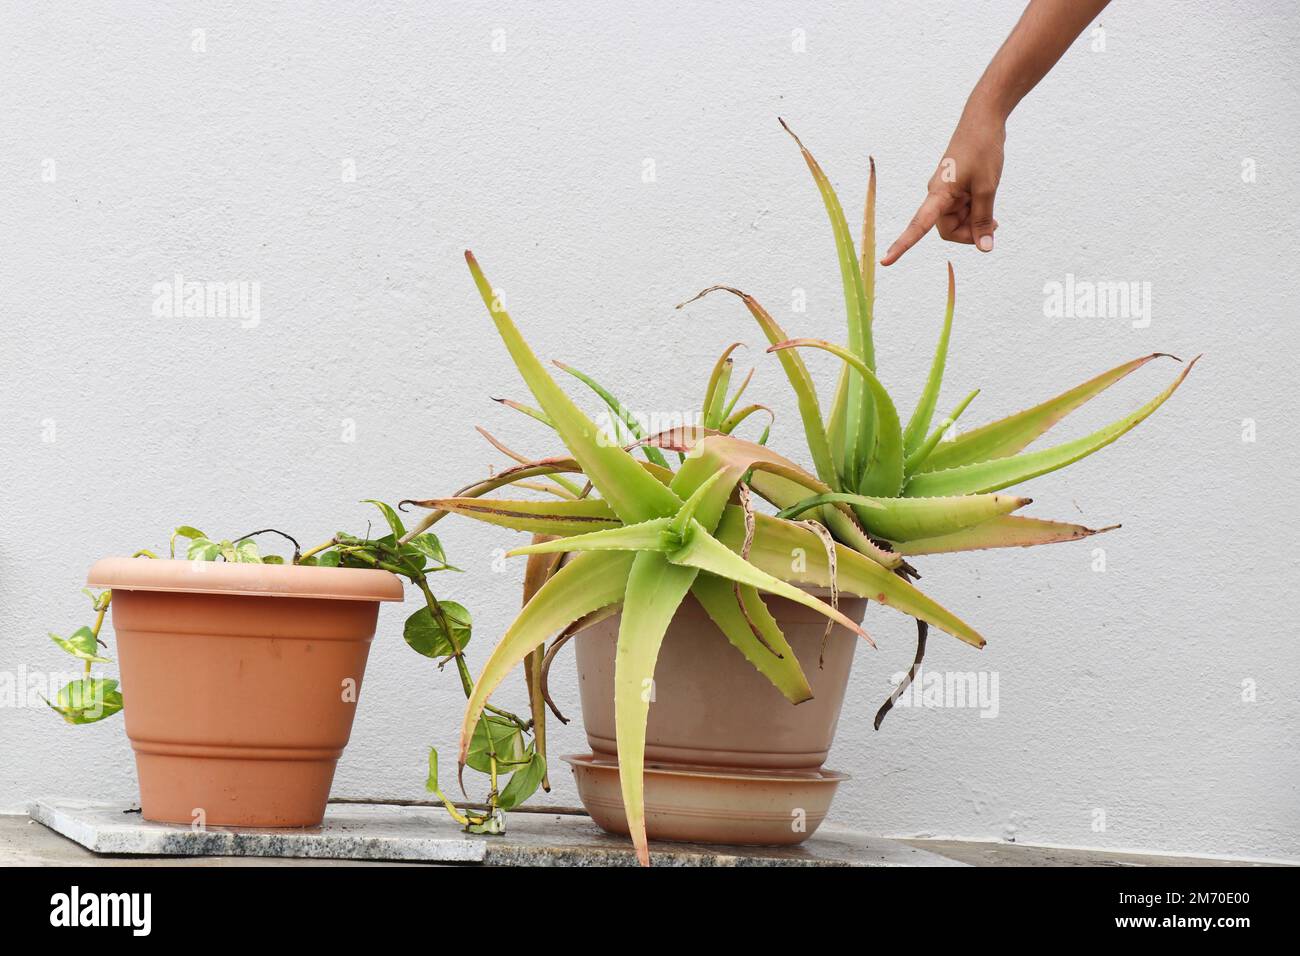 Les plantes de vera d'aloès poussent sur des pots en plastique dans le jardin de la maison. Mains pointant vers les feuilles de plante médicinale d'aloe vera Banque D'Images